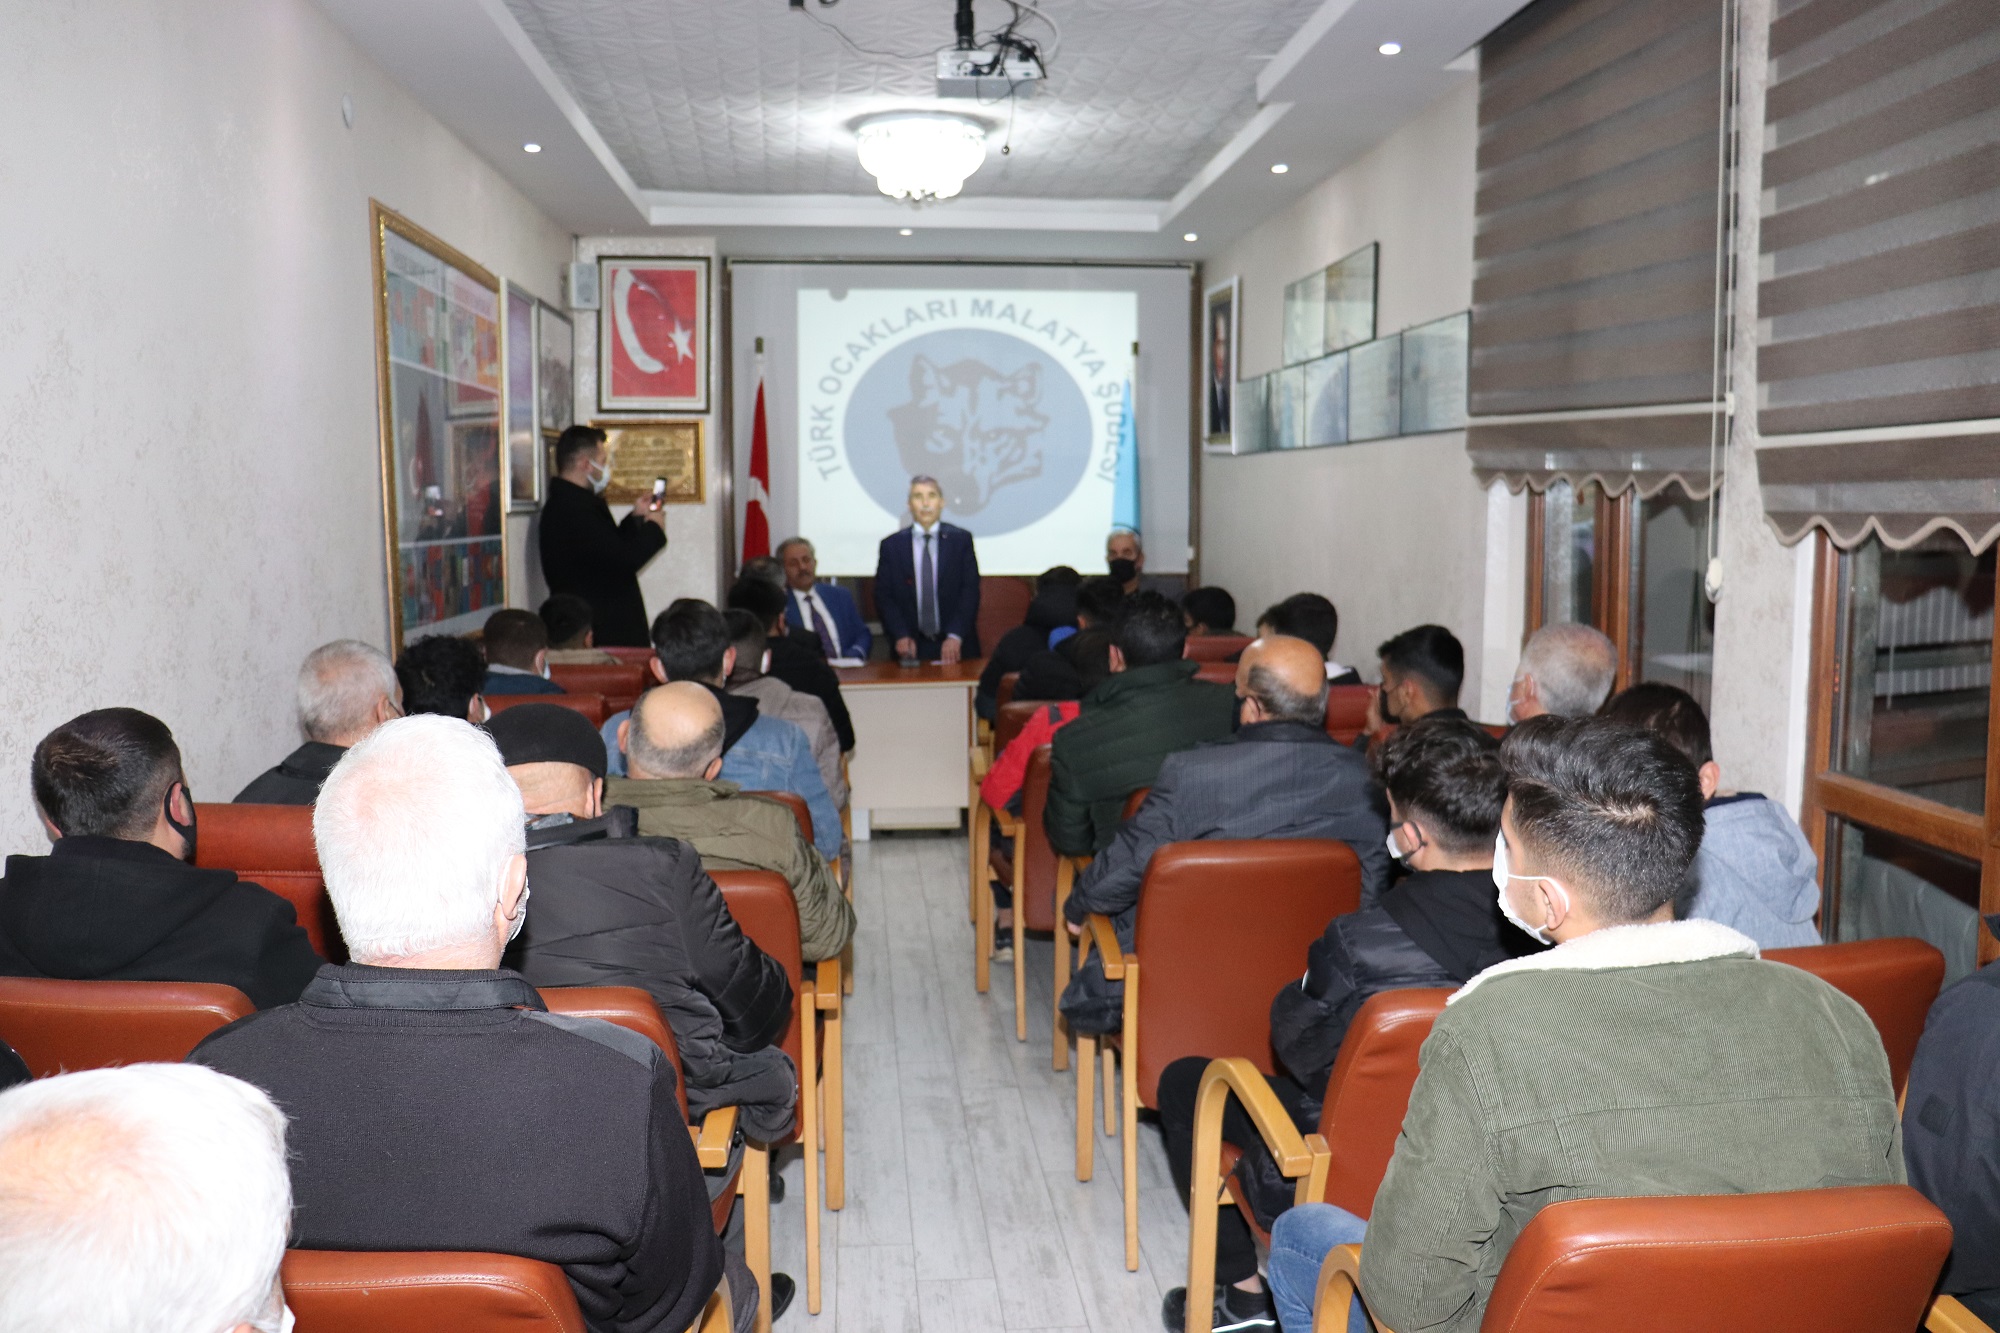 Türk Ocakları Malatya Şubesi tarafından geleneksel hale getirilen Ocakbaşı Sohbetleri kapsamında Doç. Dr. Hamdi Onay’ın konuşmacı olarak katıldığı “Deizm ve Açmazları” konulu konferans düzenlendi.